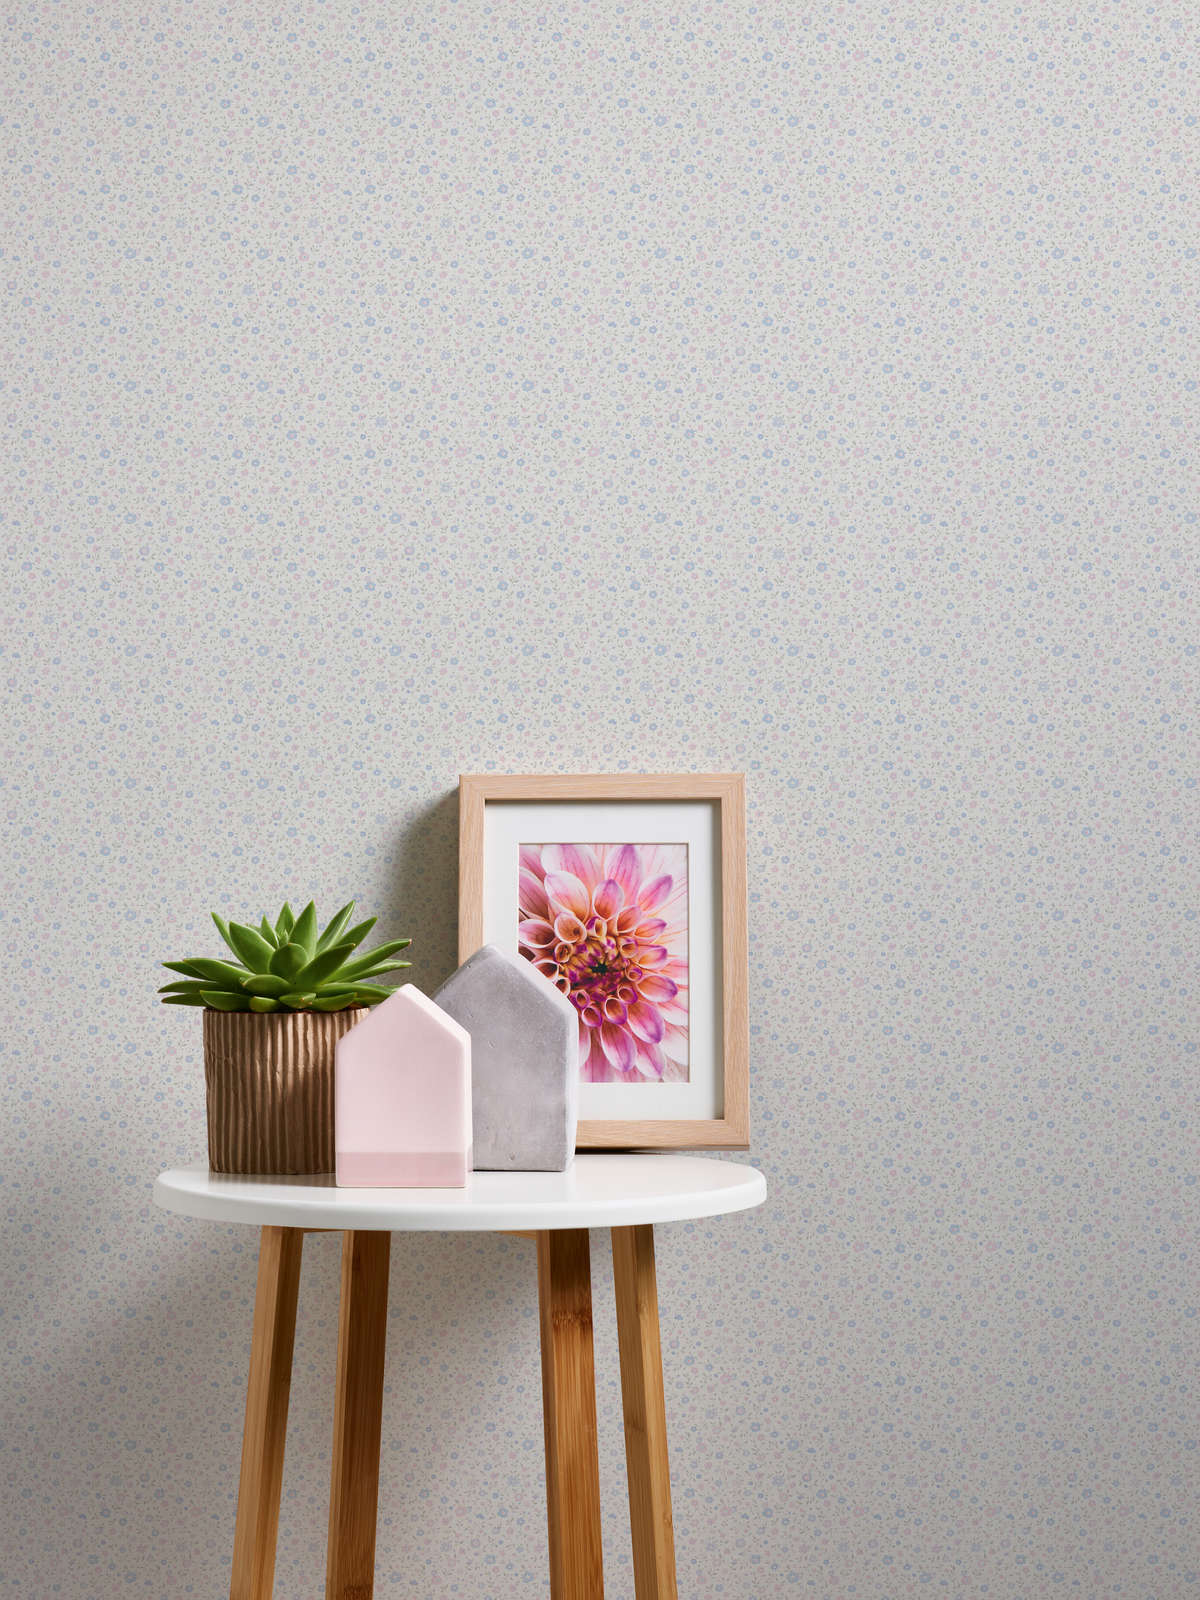             Papier peint romantique de style cottage avec motif floral - rose, bleu, blanc
        